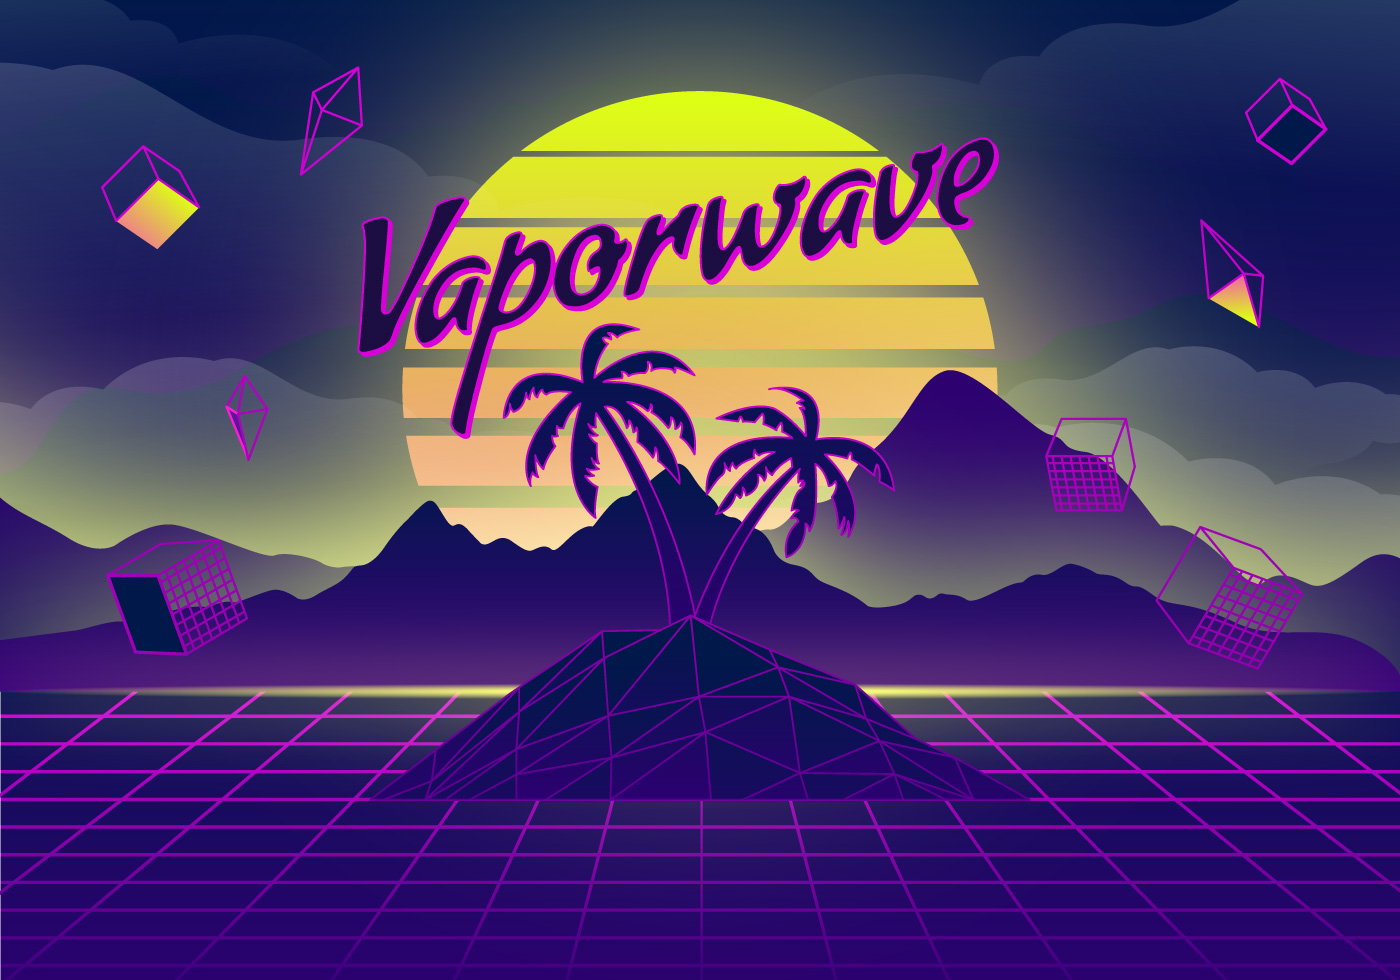 Vaporwave Background Illustration Download Free Vectors, Clipart